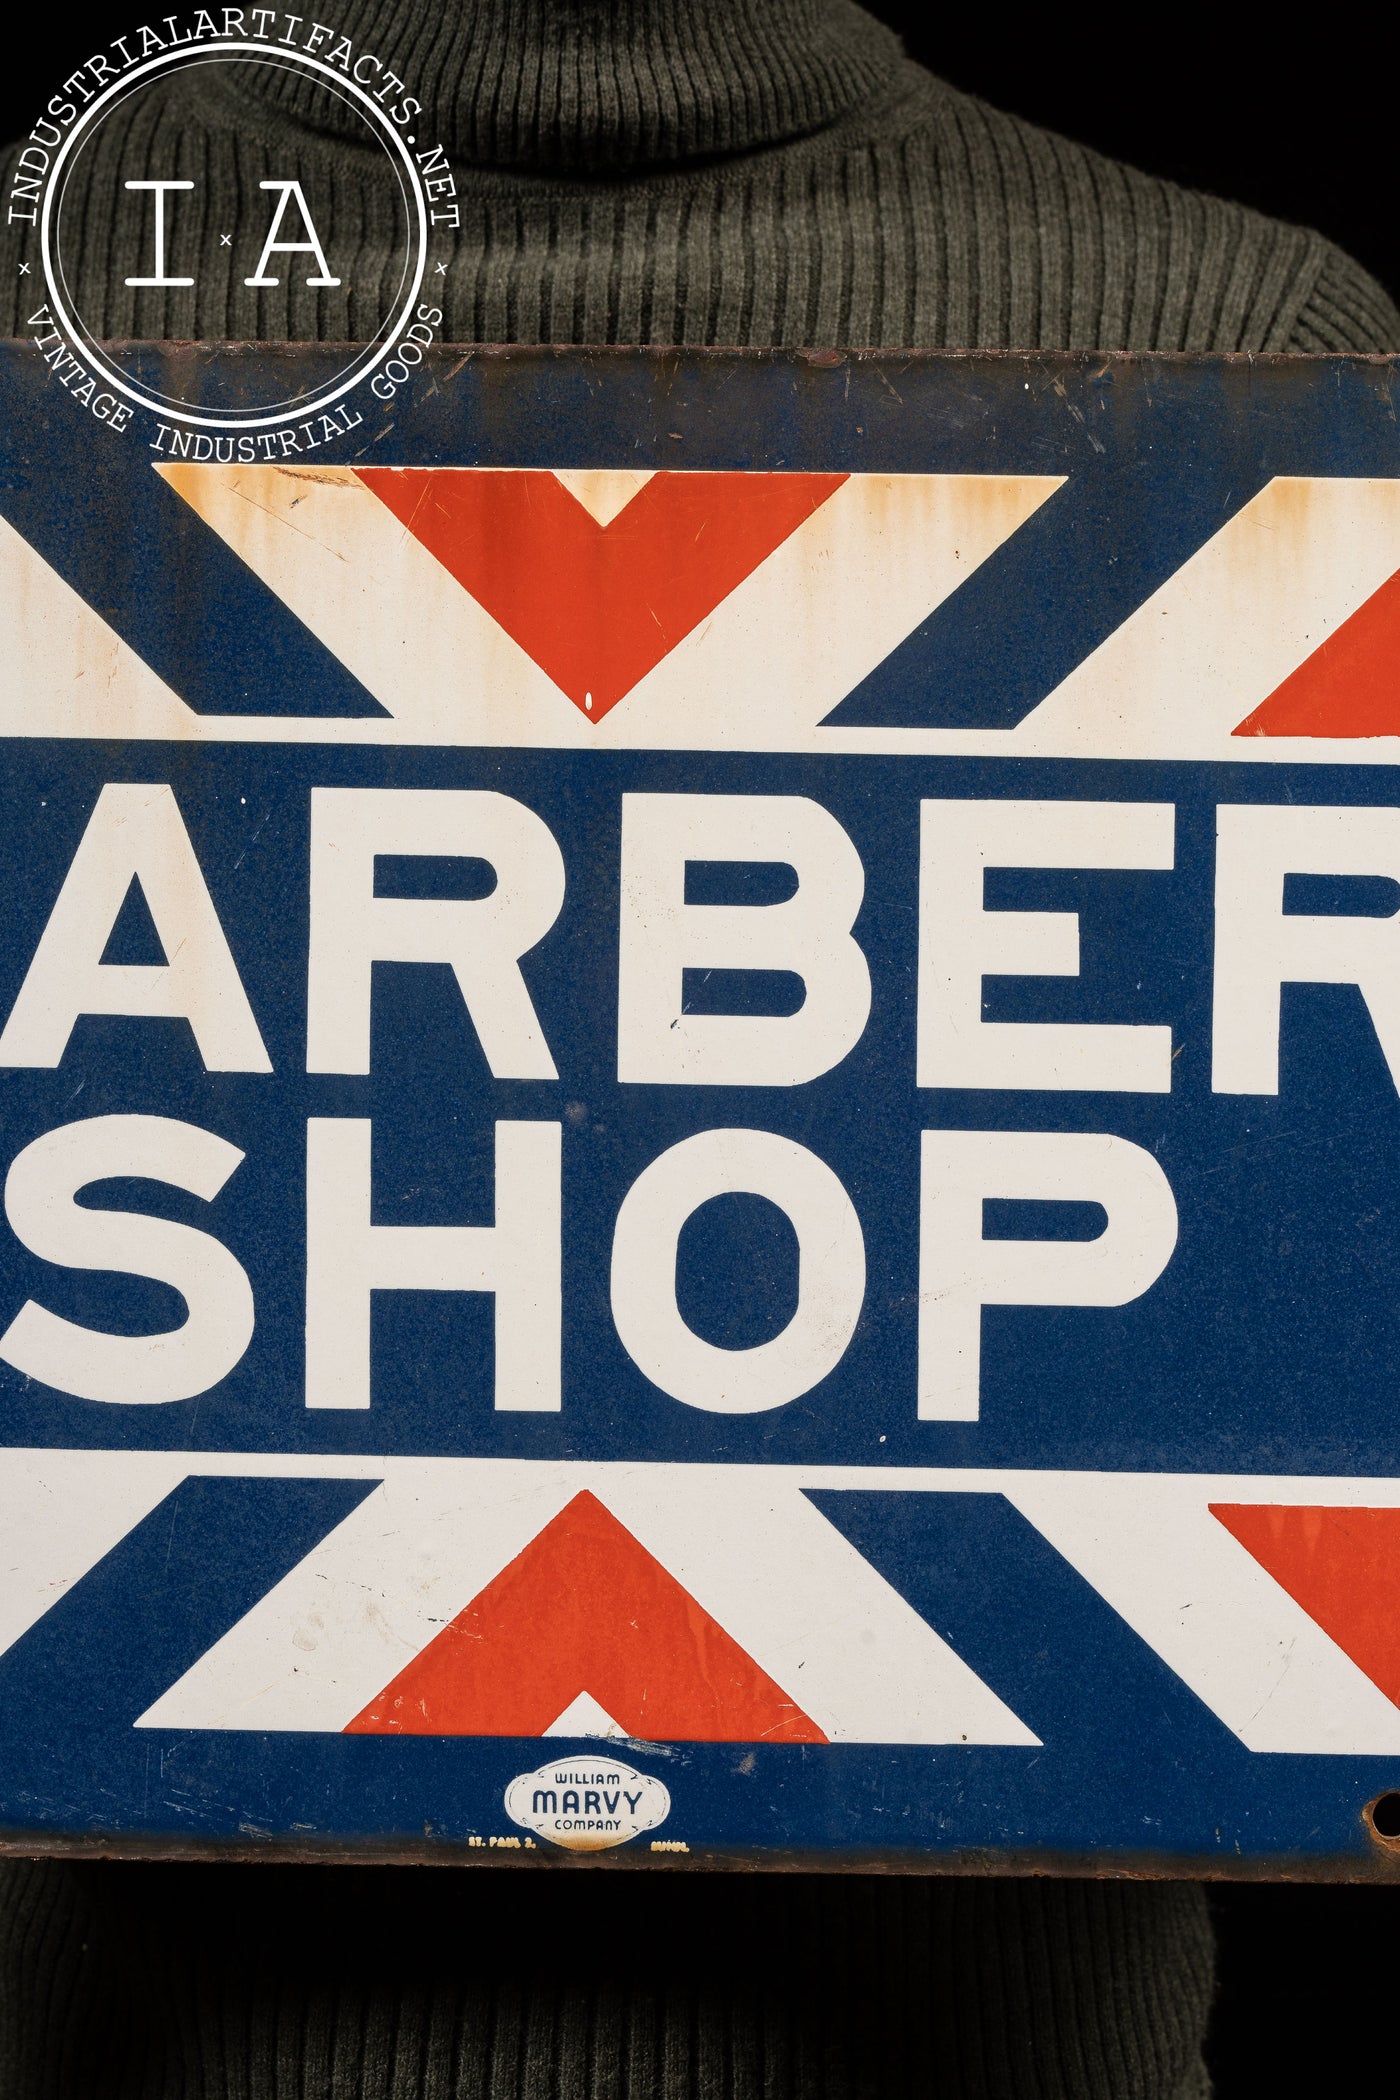 DSP Barbershop Storefront Sign